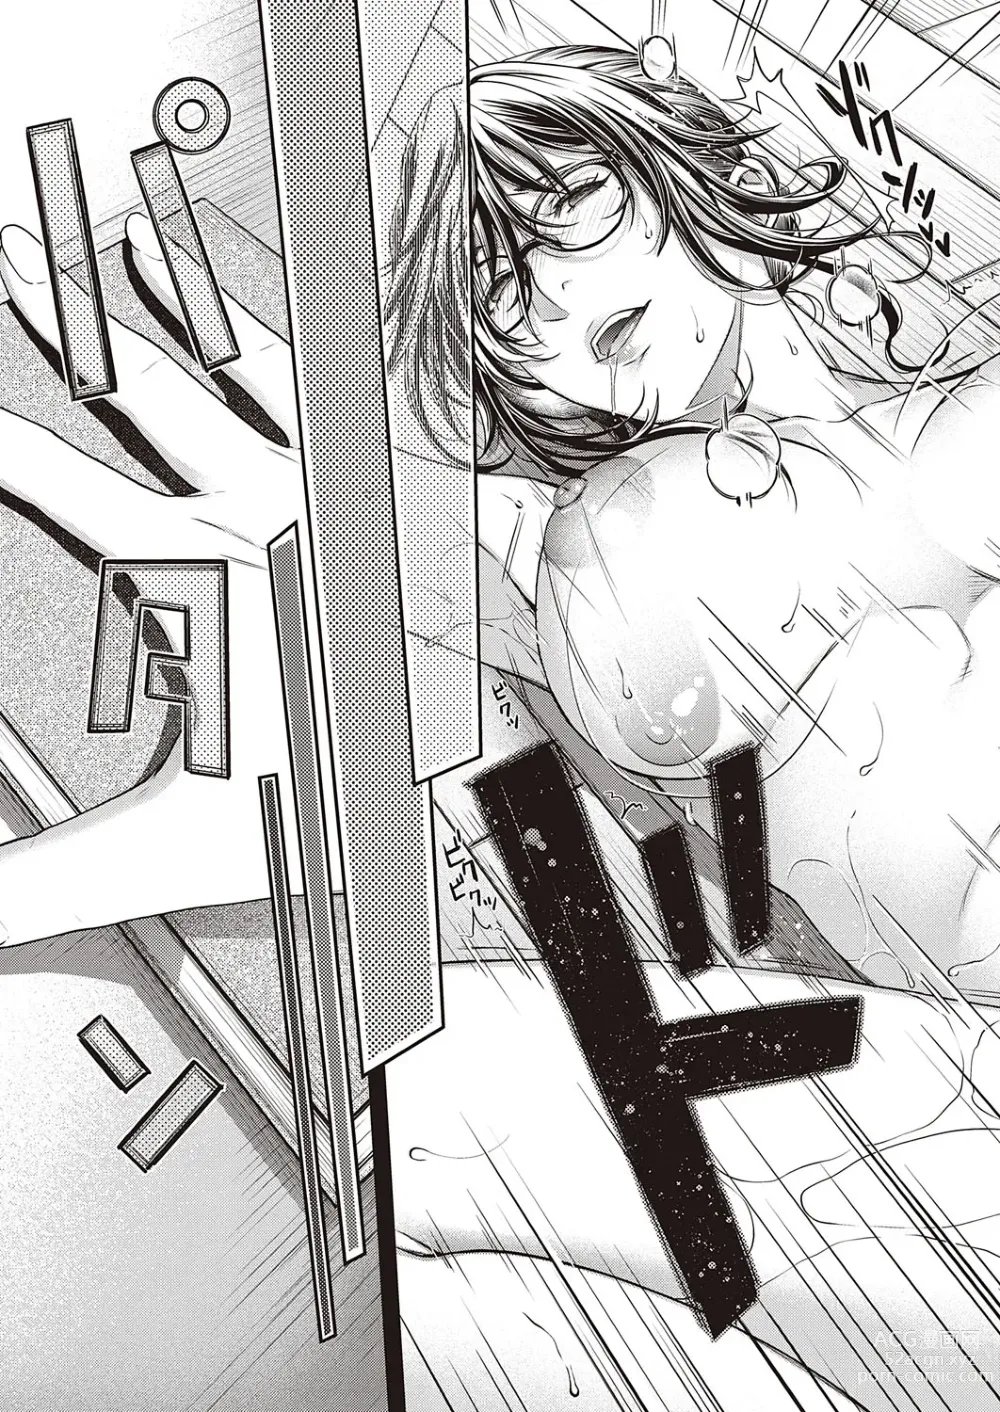 Page 22 of manga Eigetsu no Kemono